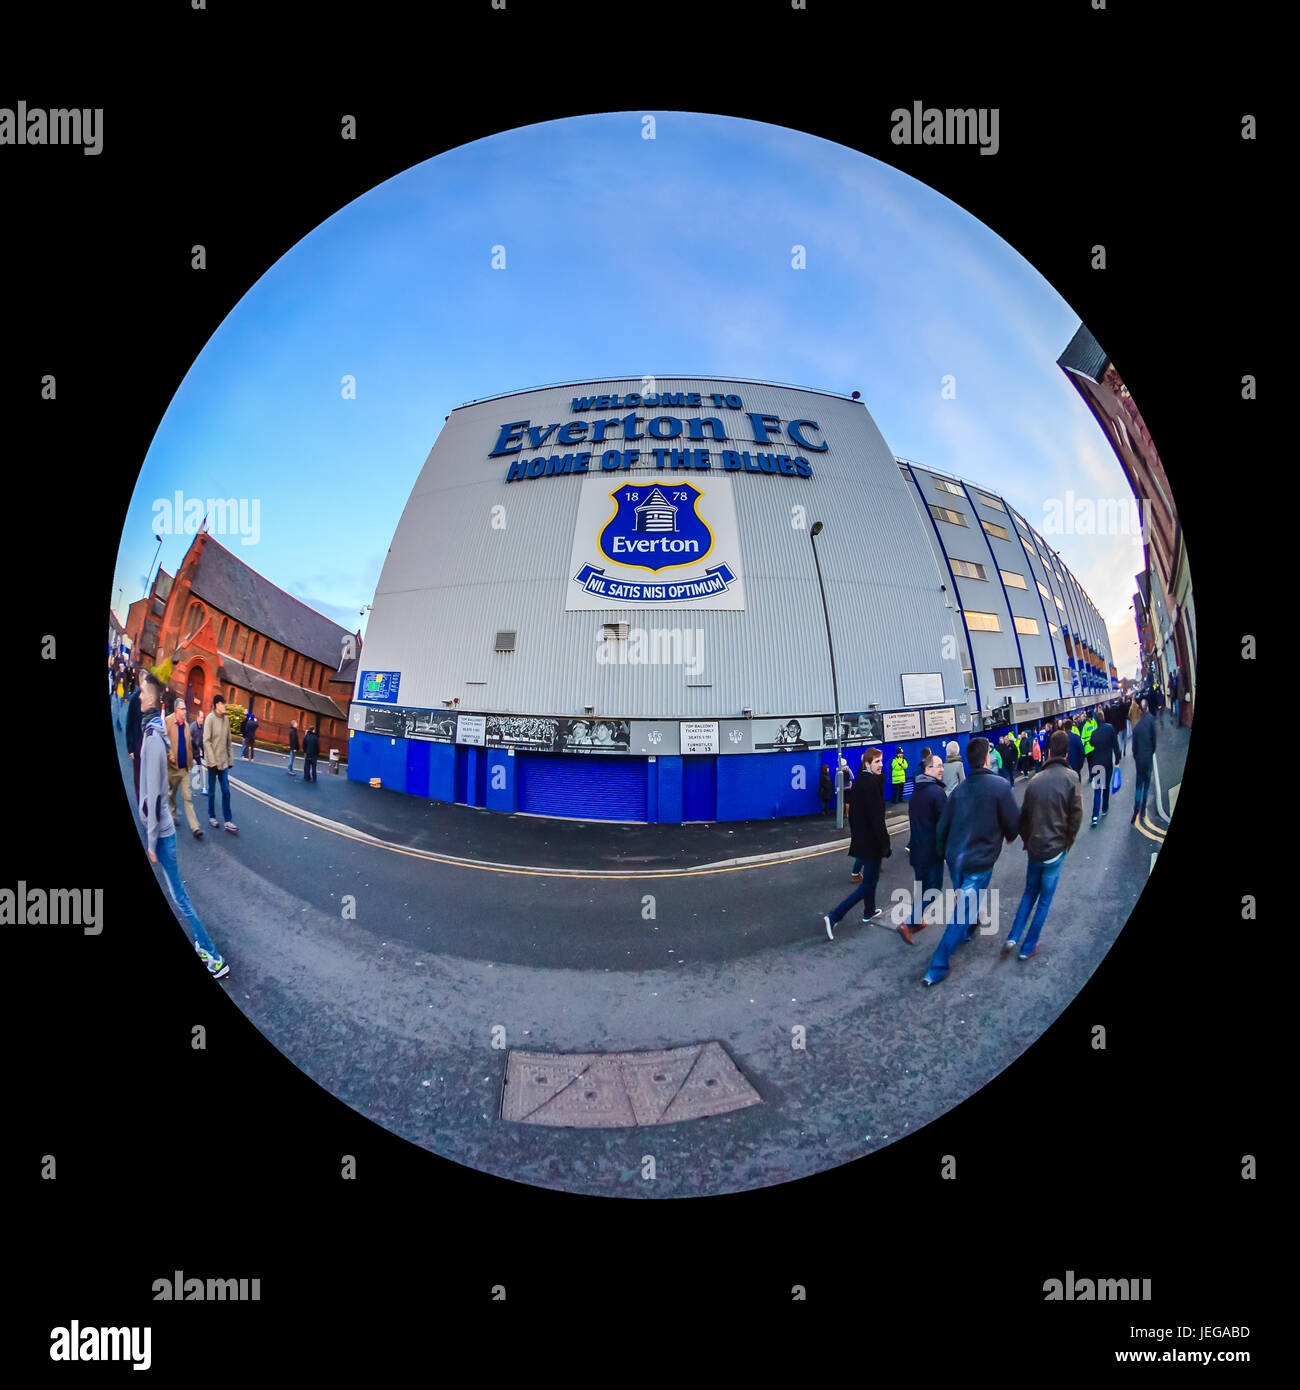 Goodison Park home di Everton Football Club. Lo stadio è uno dei più antichi costruiti allo scopo gli stadi di calcio del mondo. Foto Stock